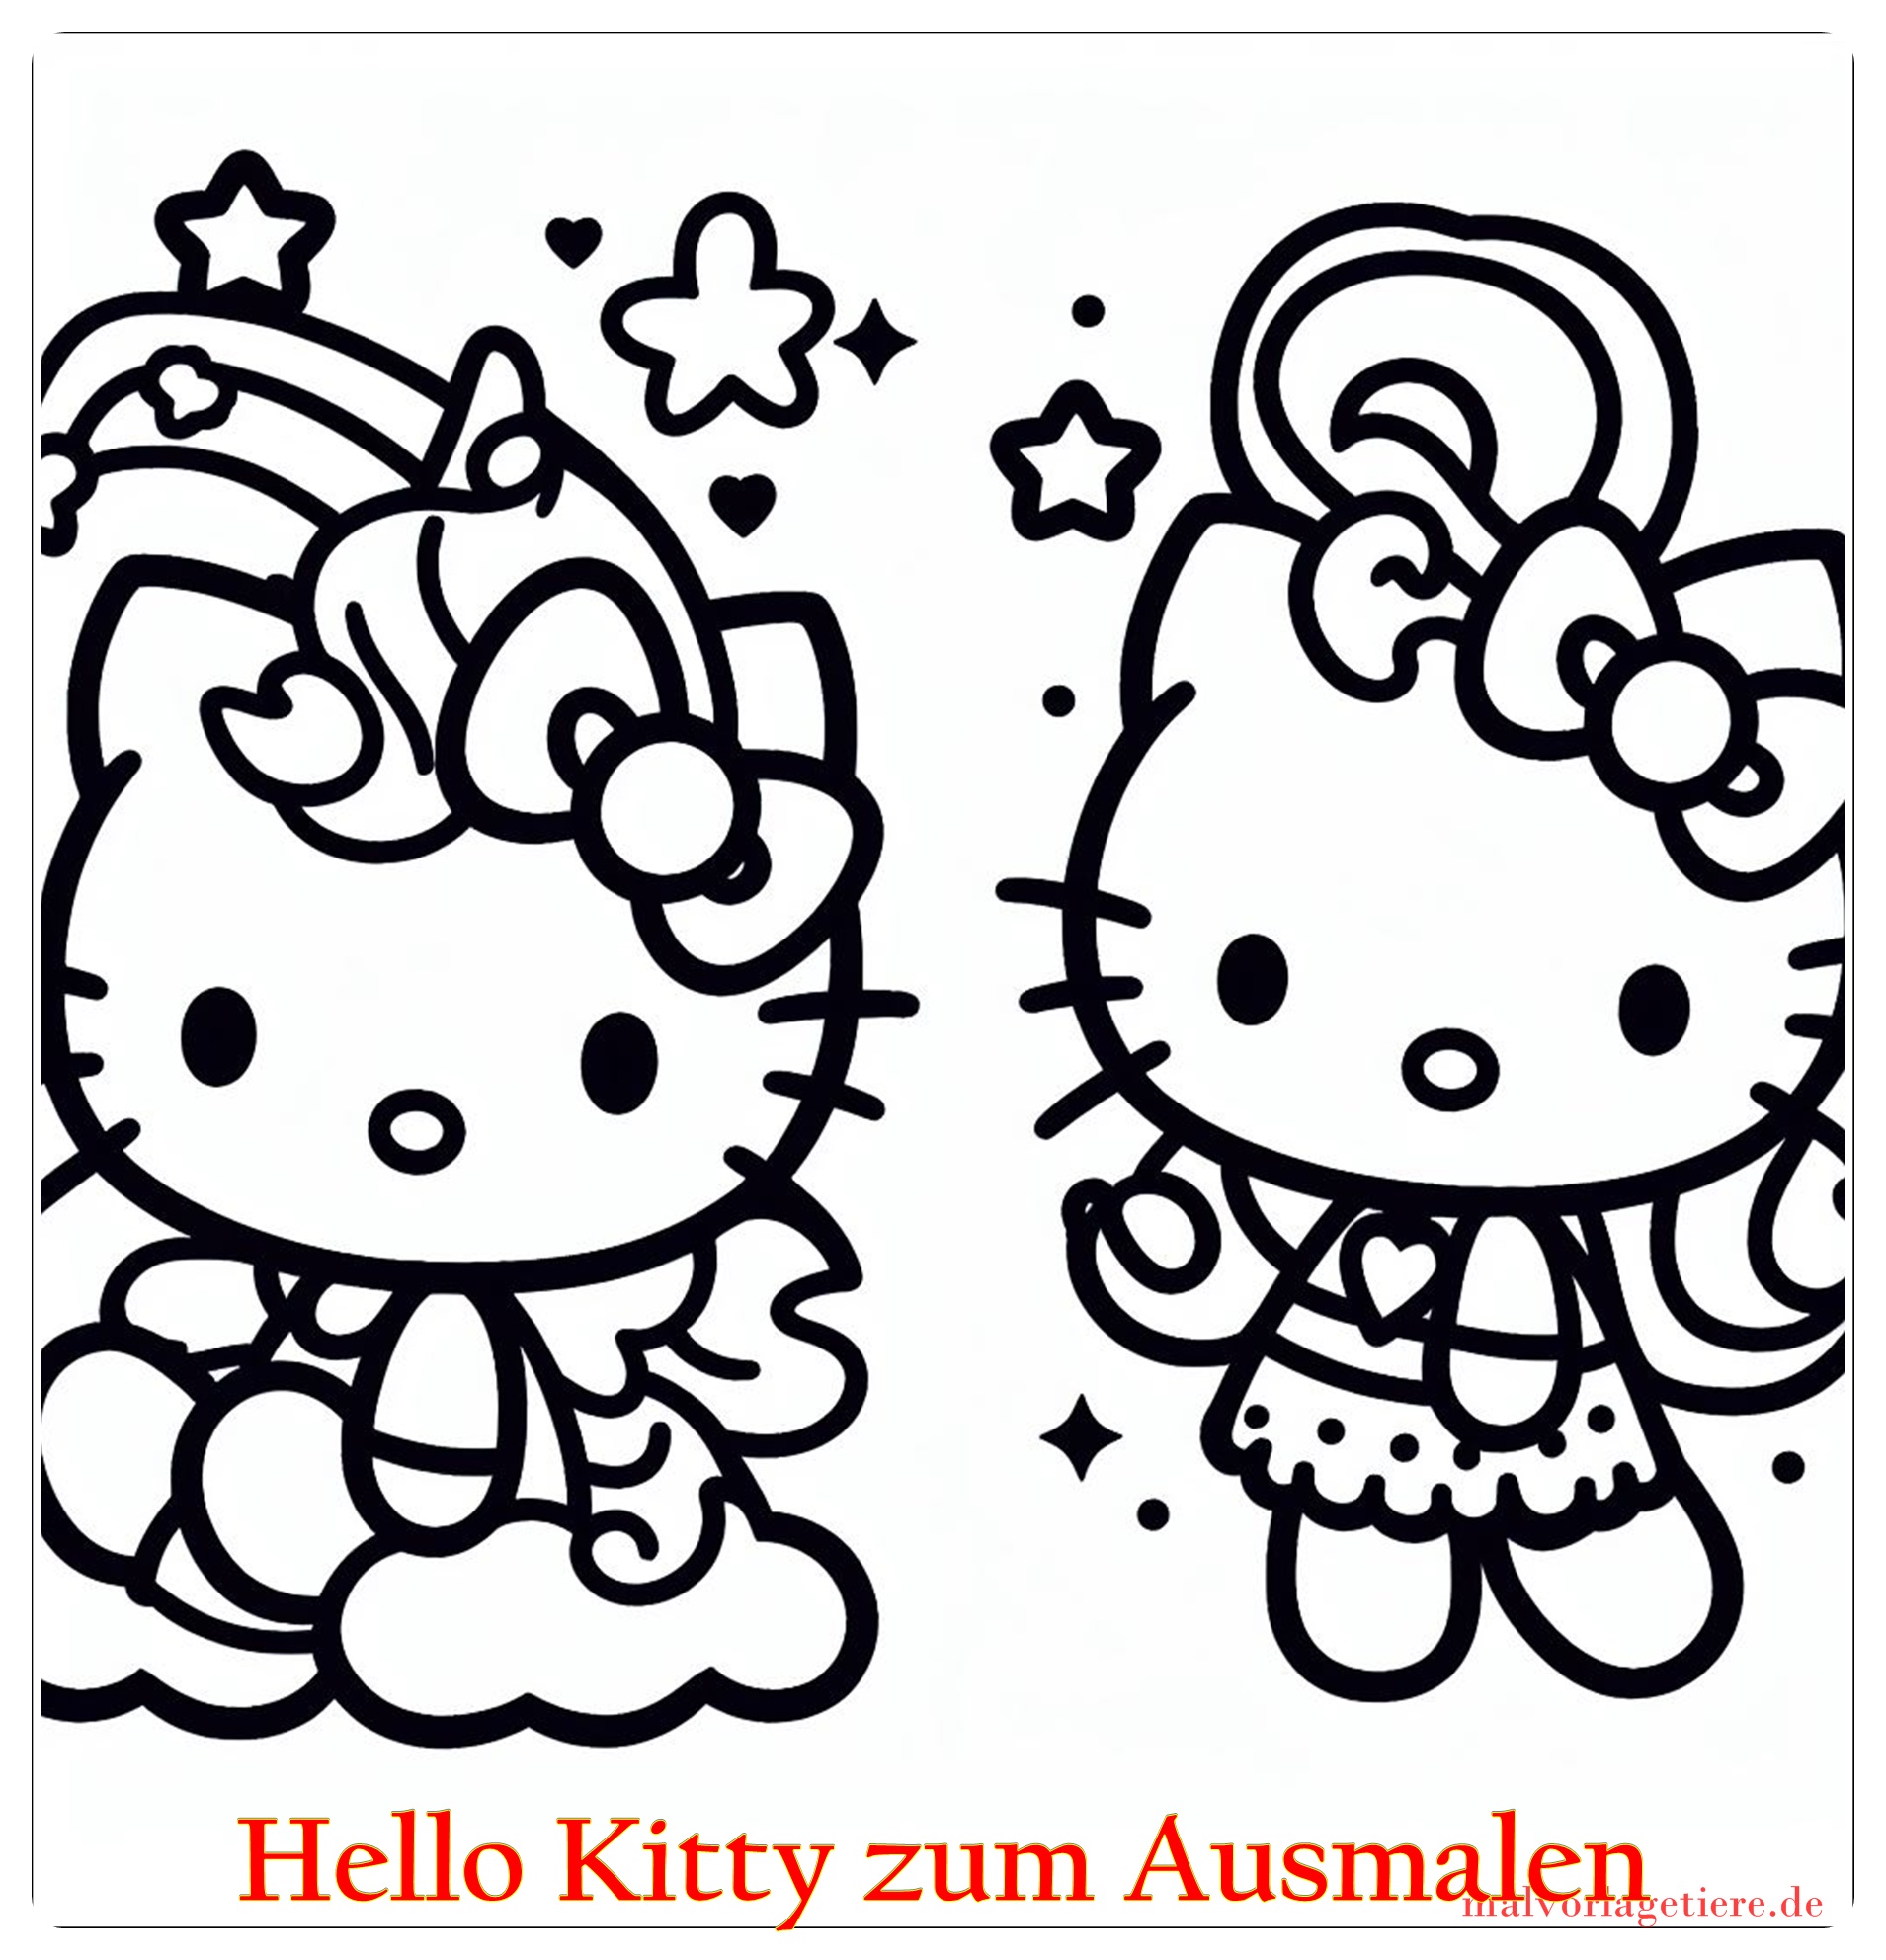 Hello Kitty zum Ausmalen 06 by malvorlagetiere